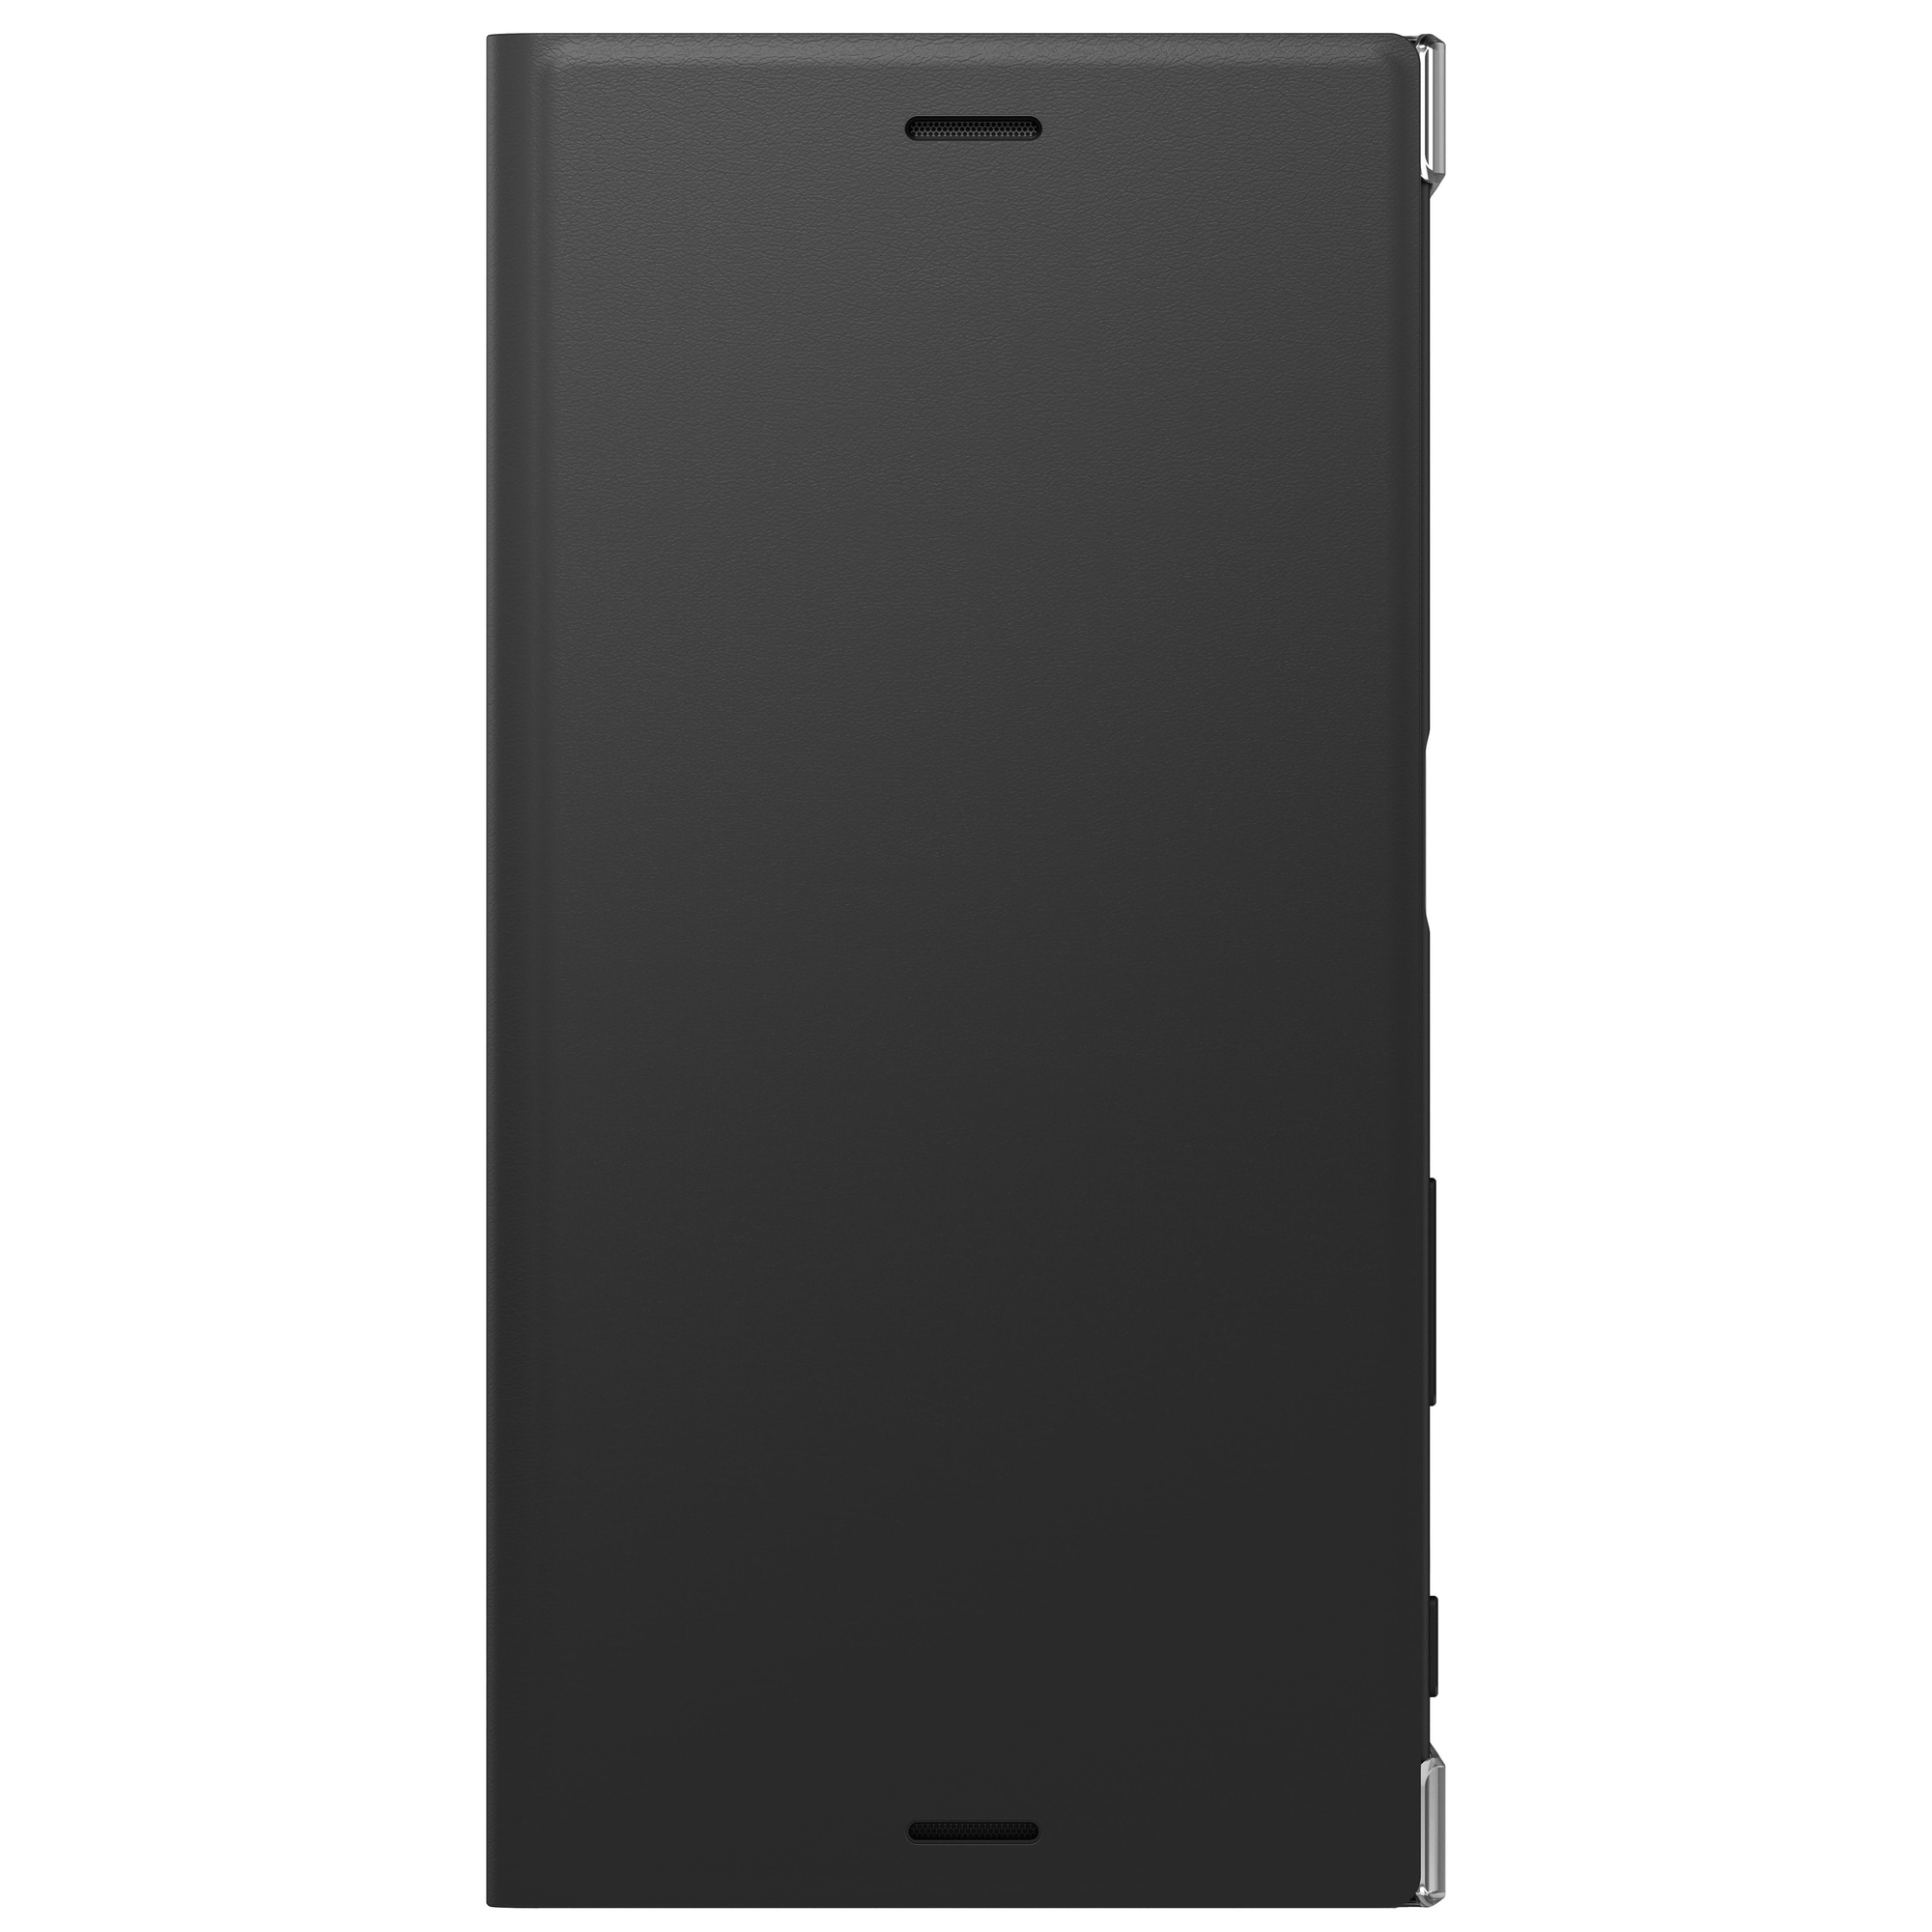 Sony Xperia XZs Style suojakotelo (grafiitinmusta) - Gigantti verkkokauppa